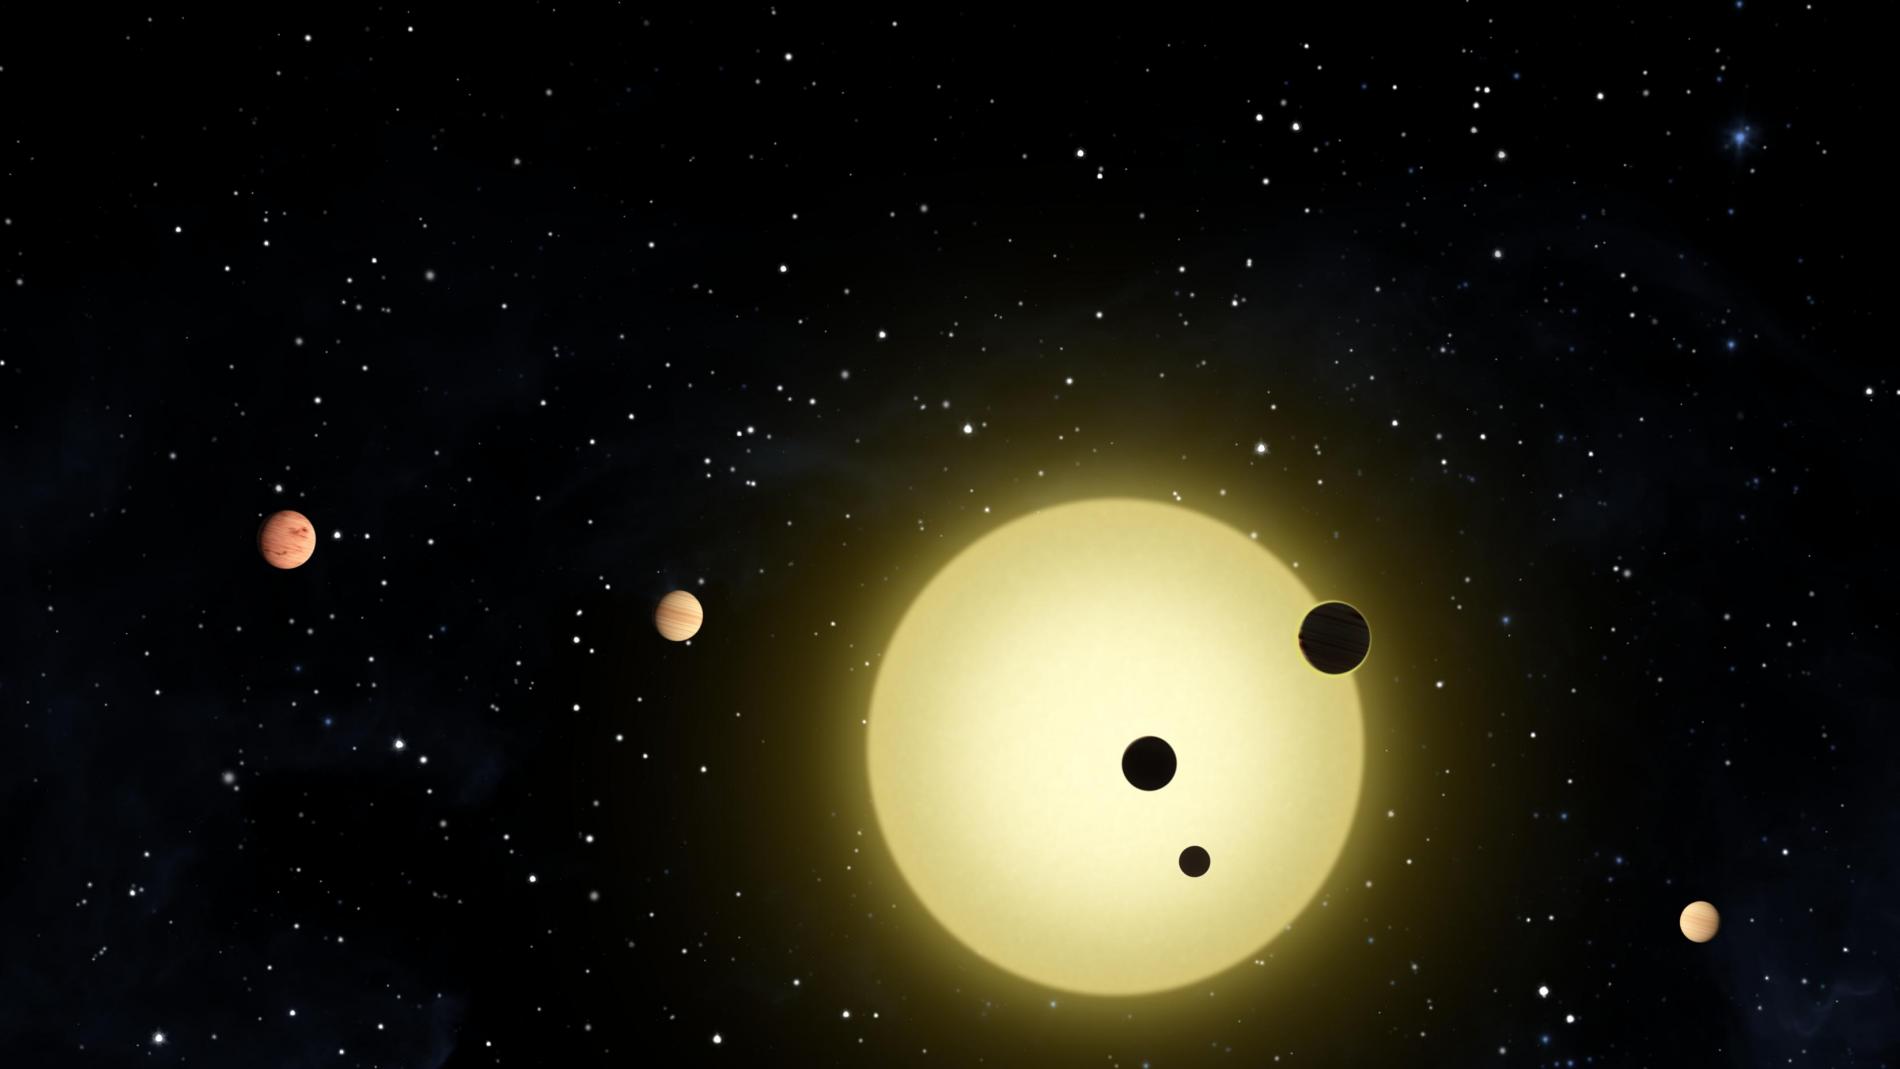 Más planetas en el sistema solar? Planetas desconocidos podrían